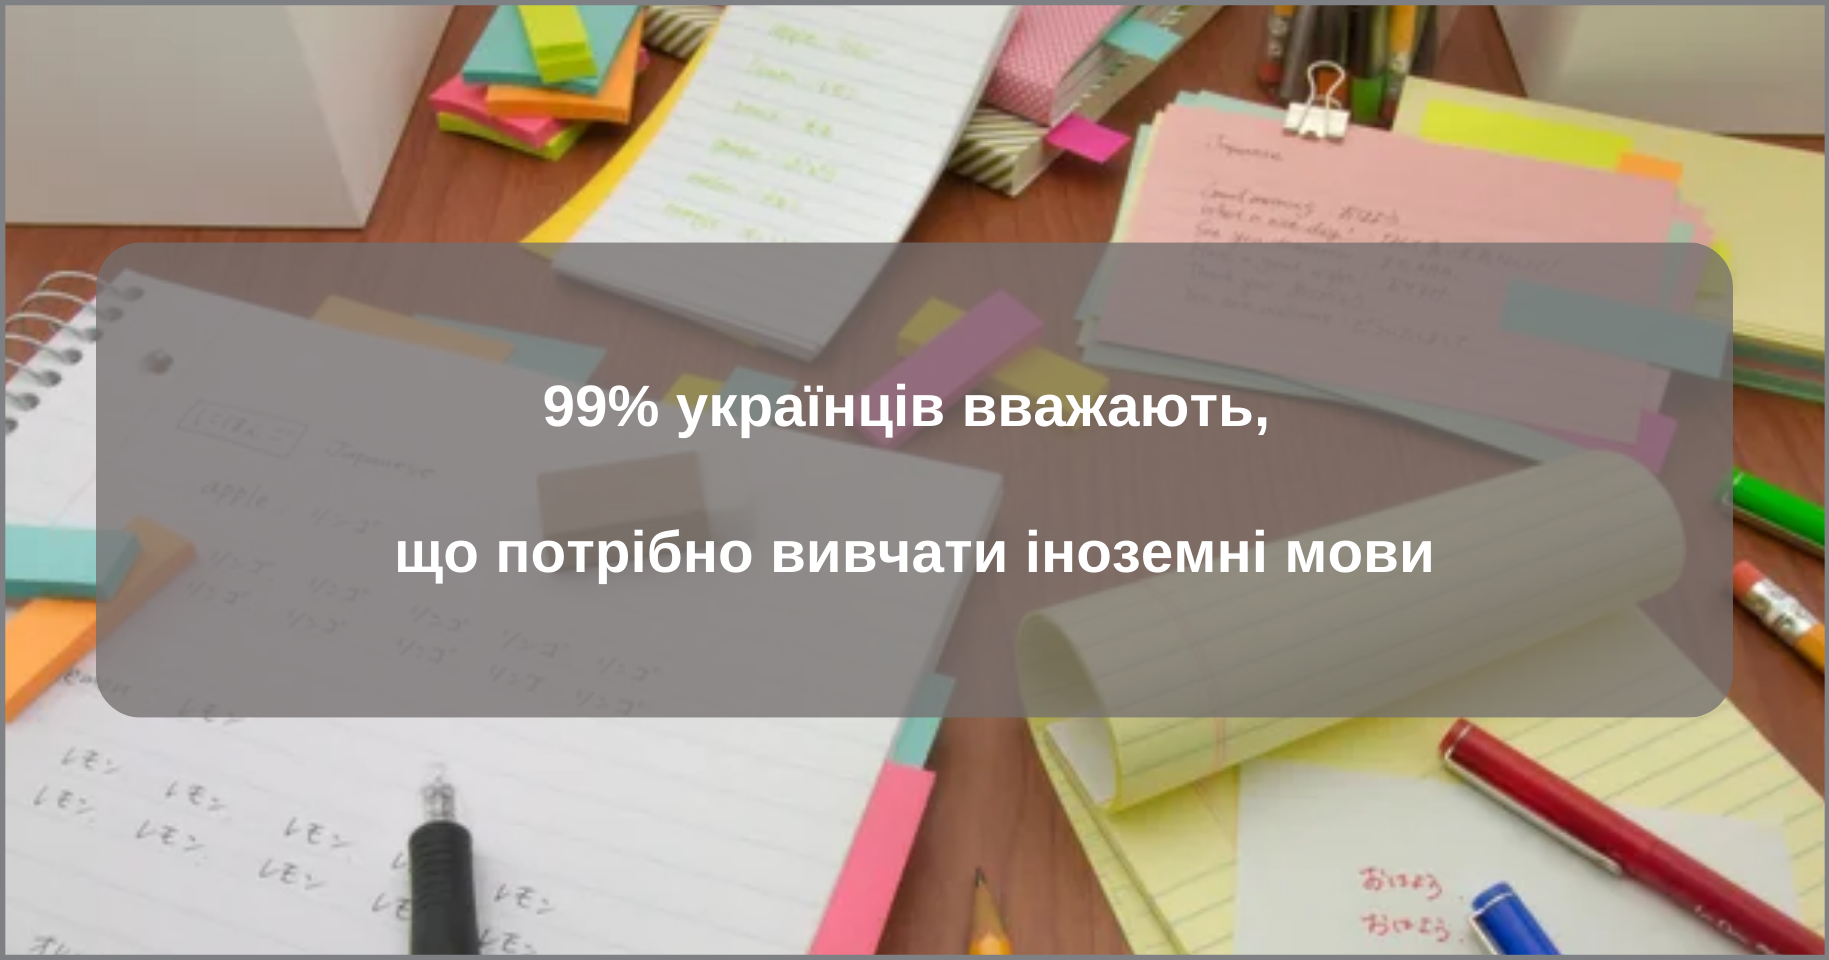 99% українців вважають, що потрібно вивчати іноземні мови